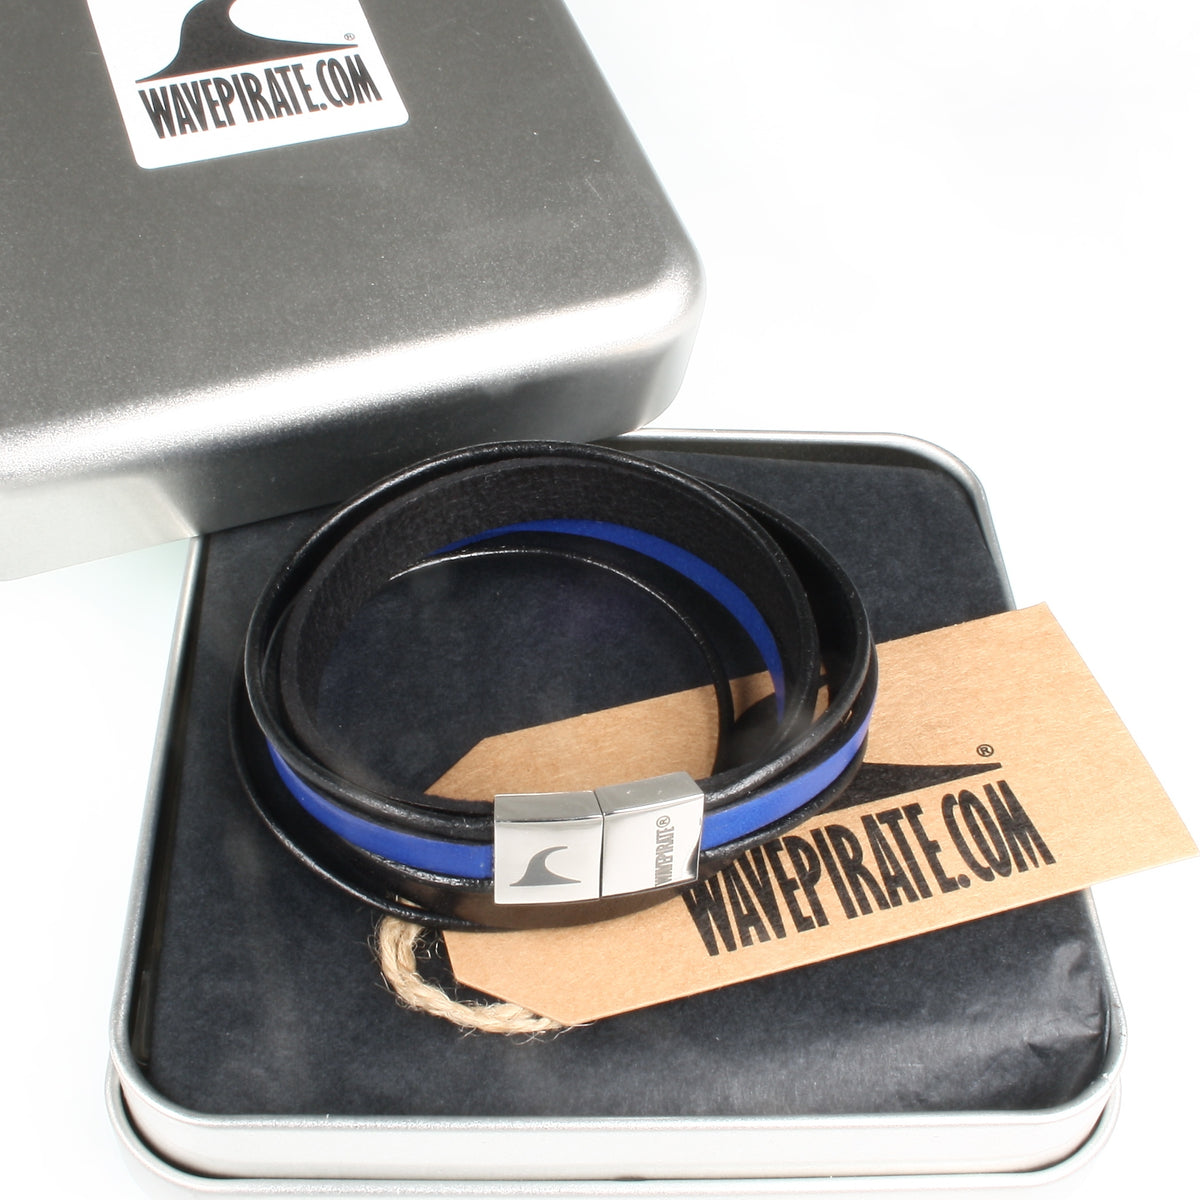 Herren-Leder-Armband-Rockstar-schwarz-blau-flach-Edelstahlverschluss-geschenkverpackung-wavepirate-shop